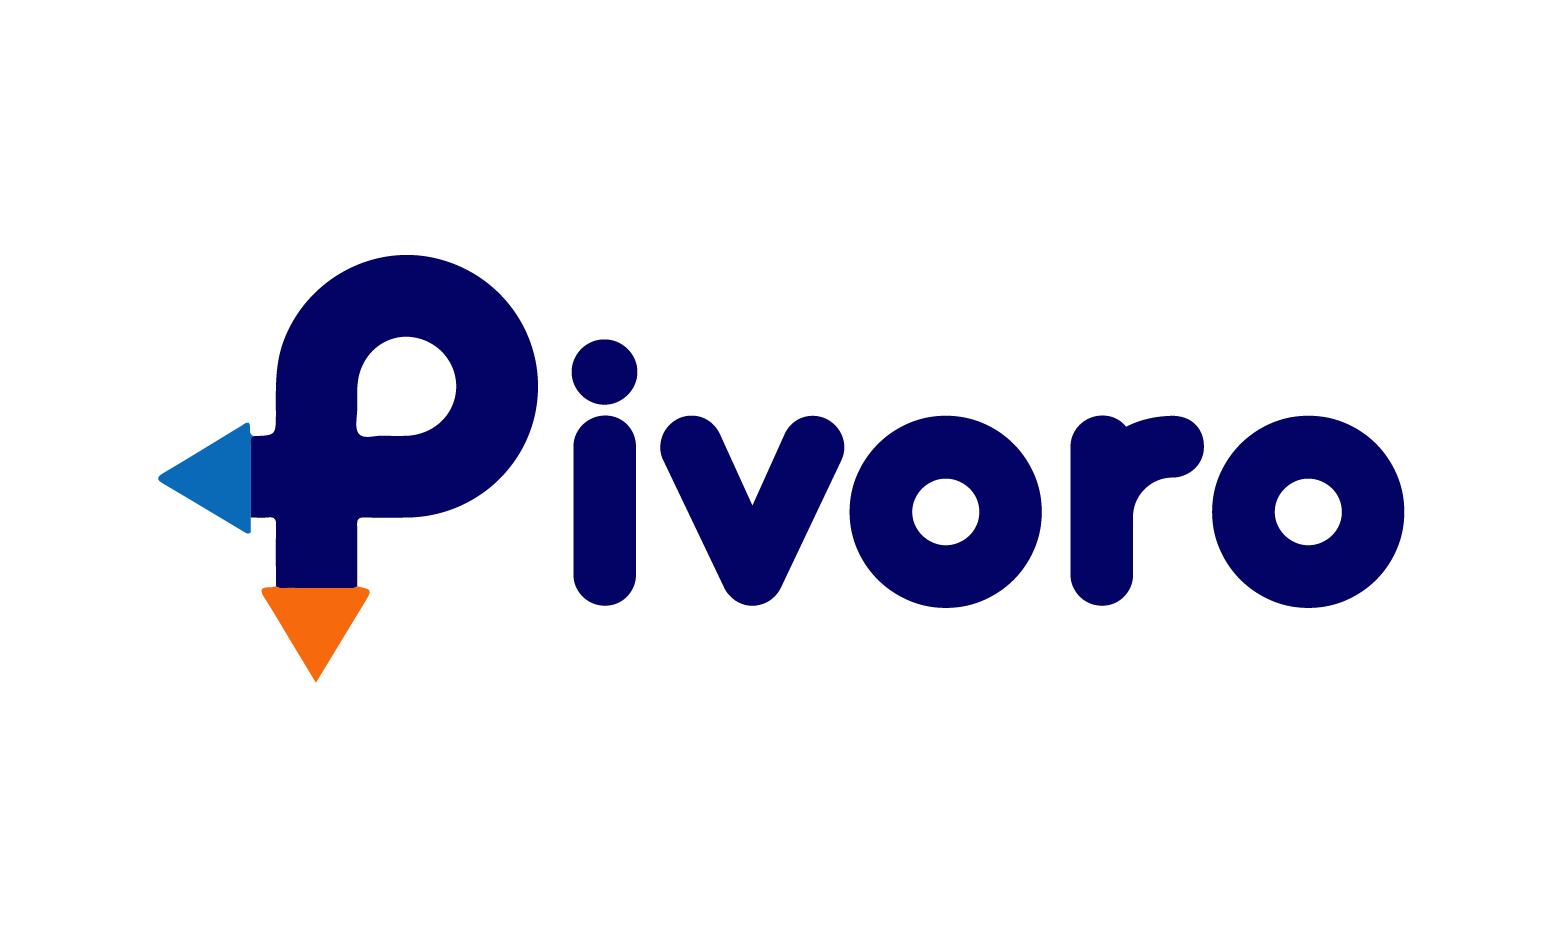 Pivoro.com - Creative brandable domain for sale